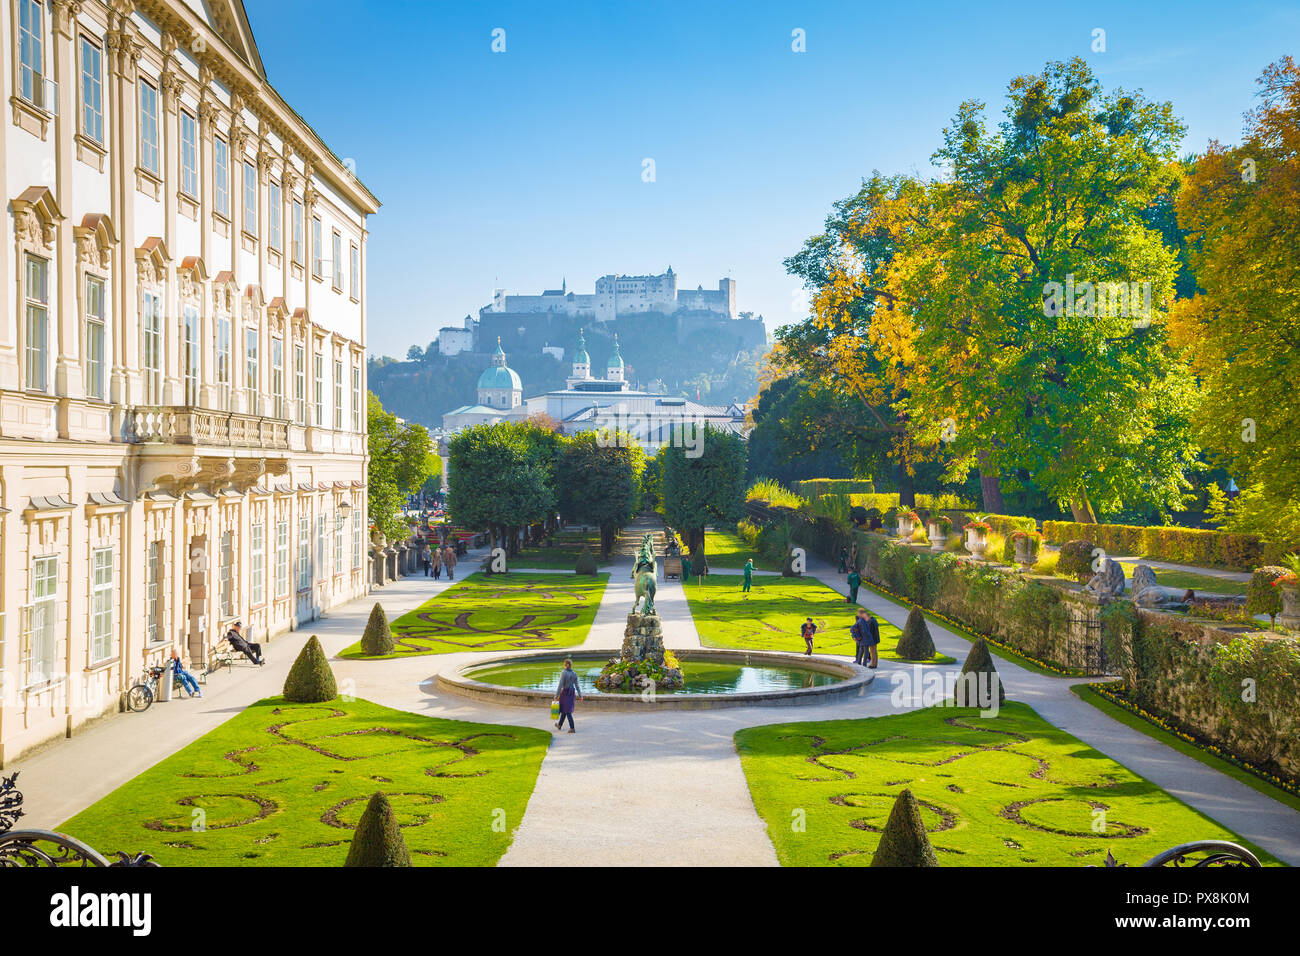 Visualizzazione classica dei famosi giardini Mirabell con la sua storica fortezza di Hohensalzburg in background in una giornata di sole in Salzburg, Austria Foto Stock